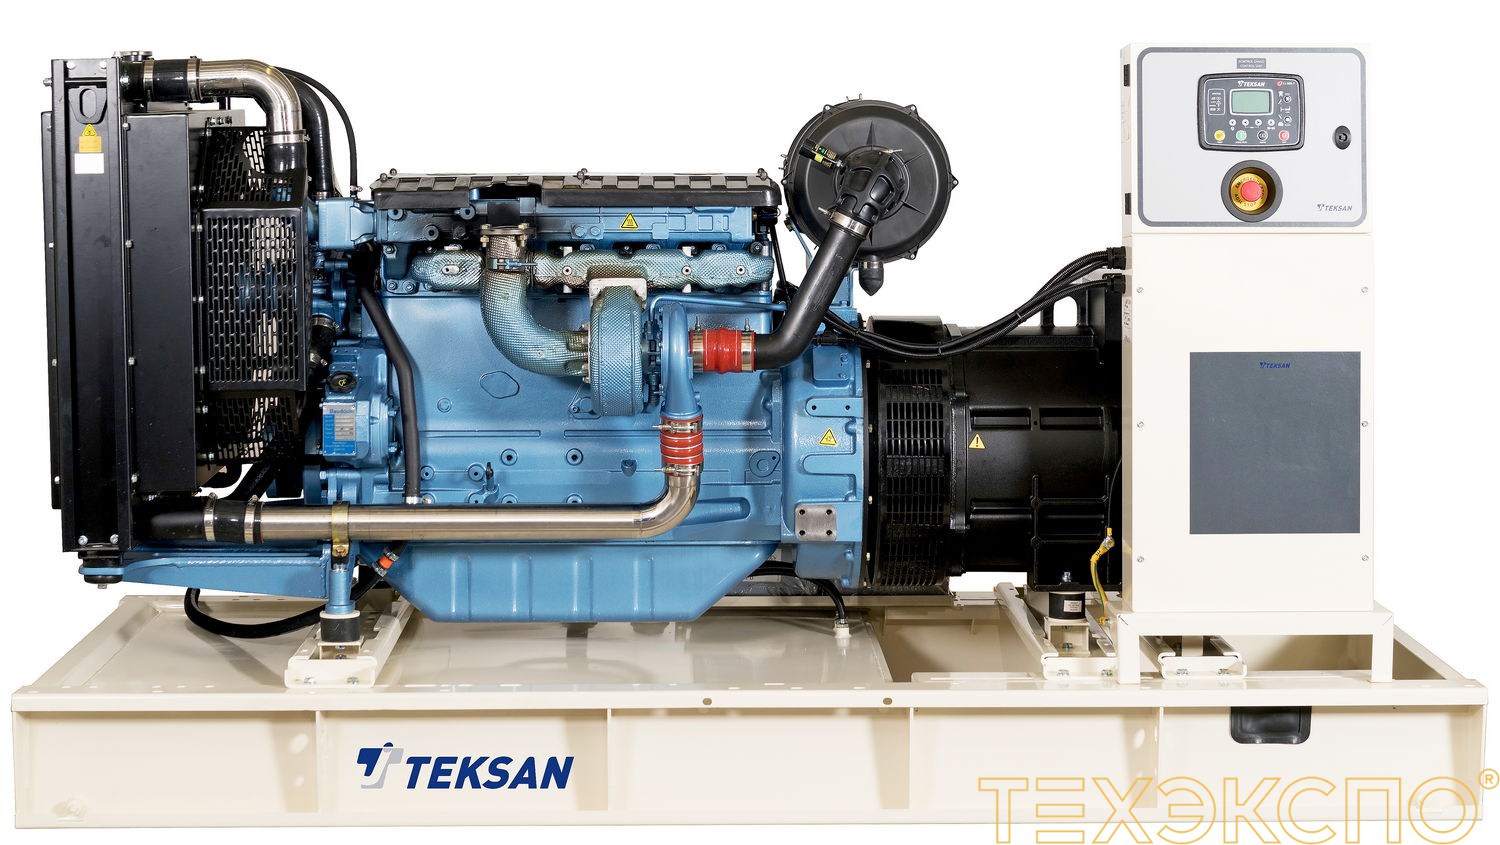 Teksan TJ275BD5C - ДЭС 200 кВт в Санкт-Петербурге за 2 431 600 рублей | Дизельная электростанция в Техэкспо